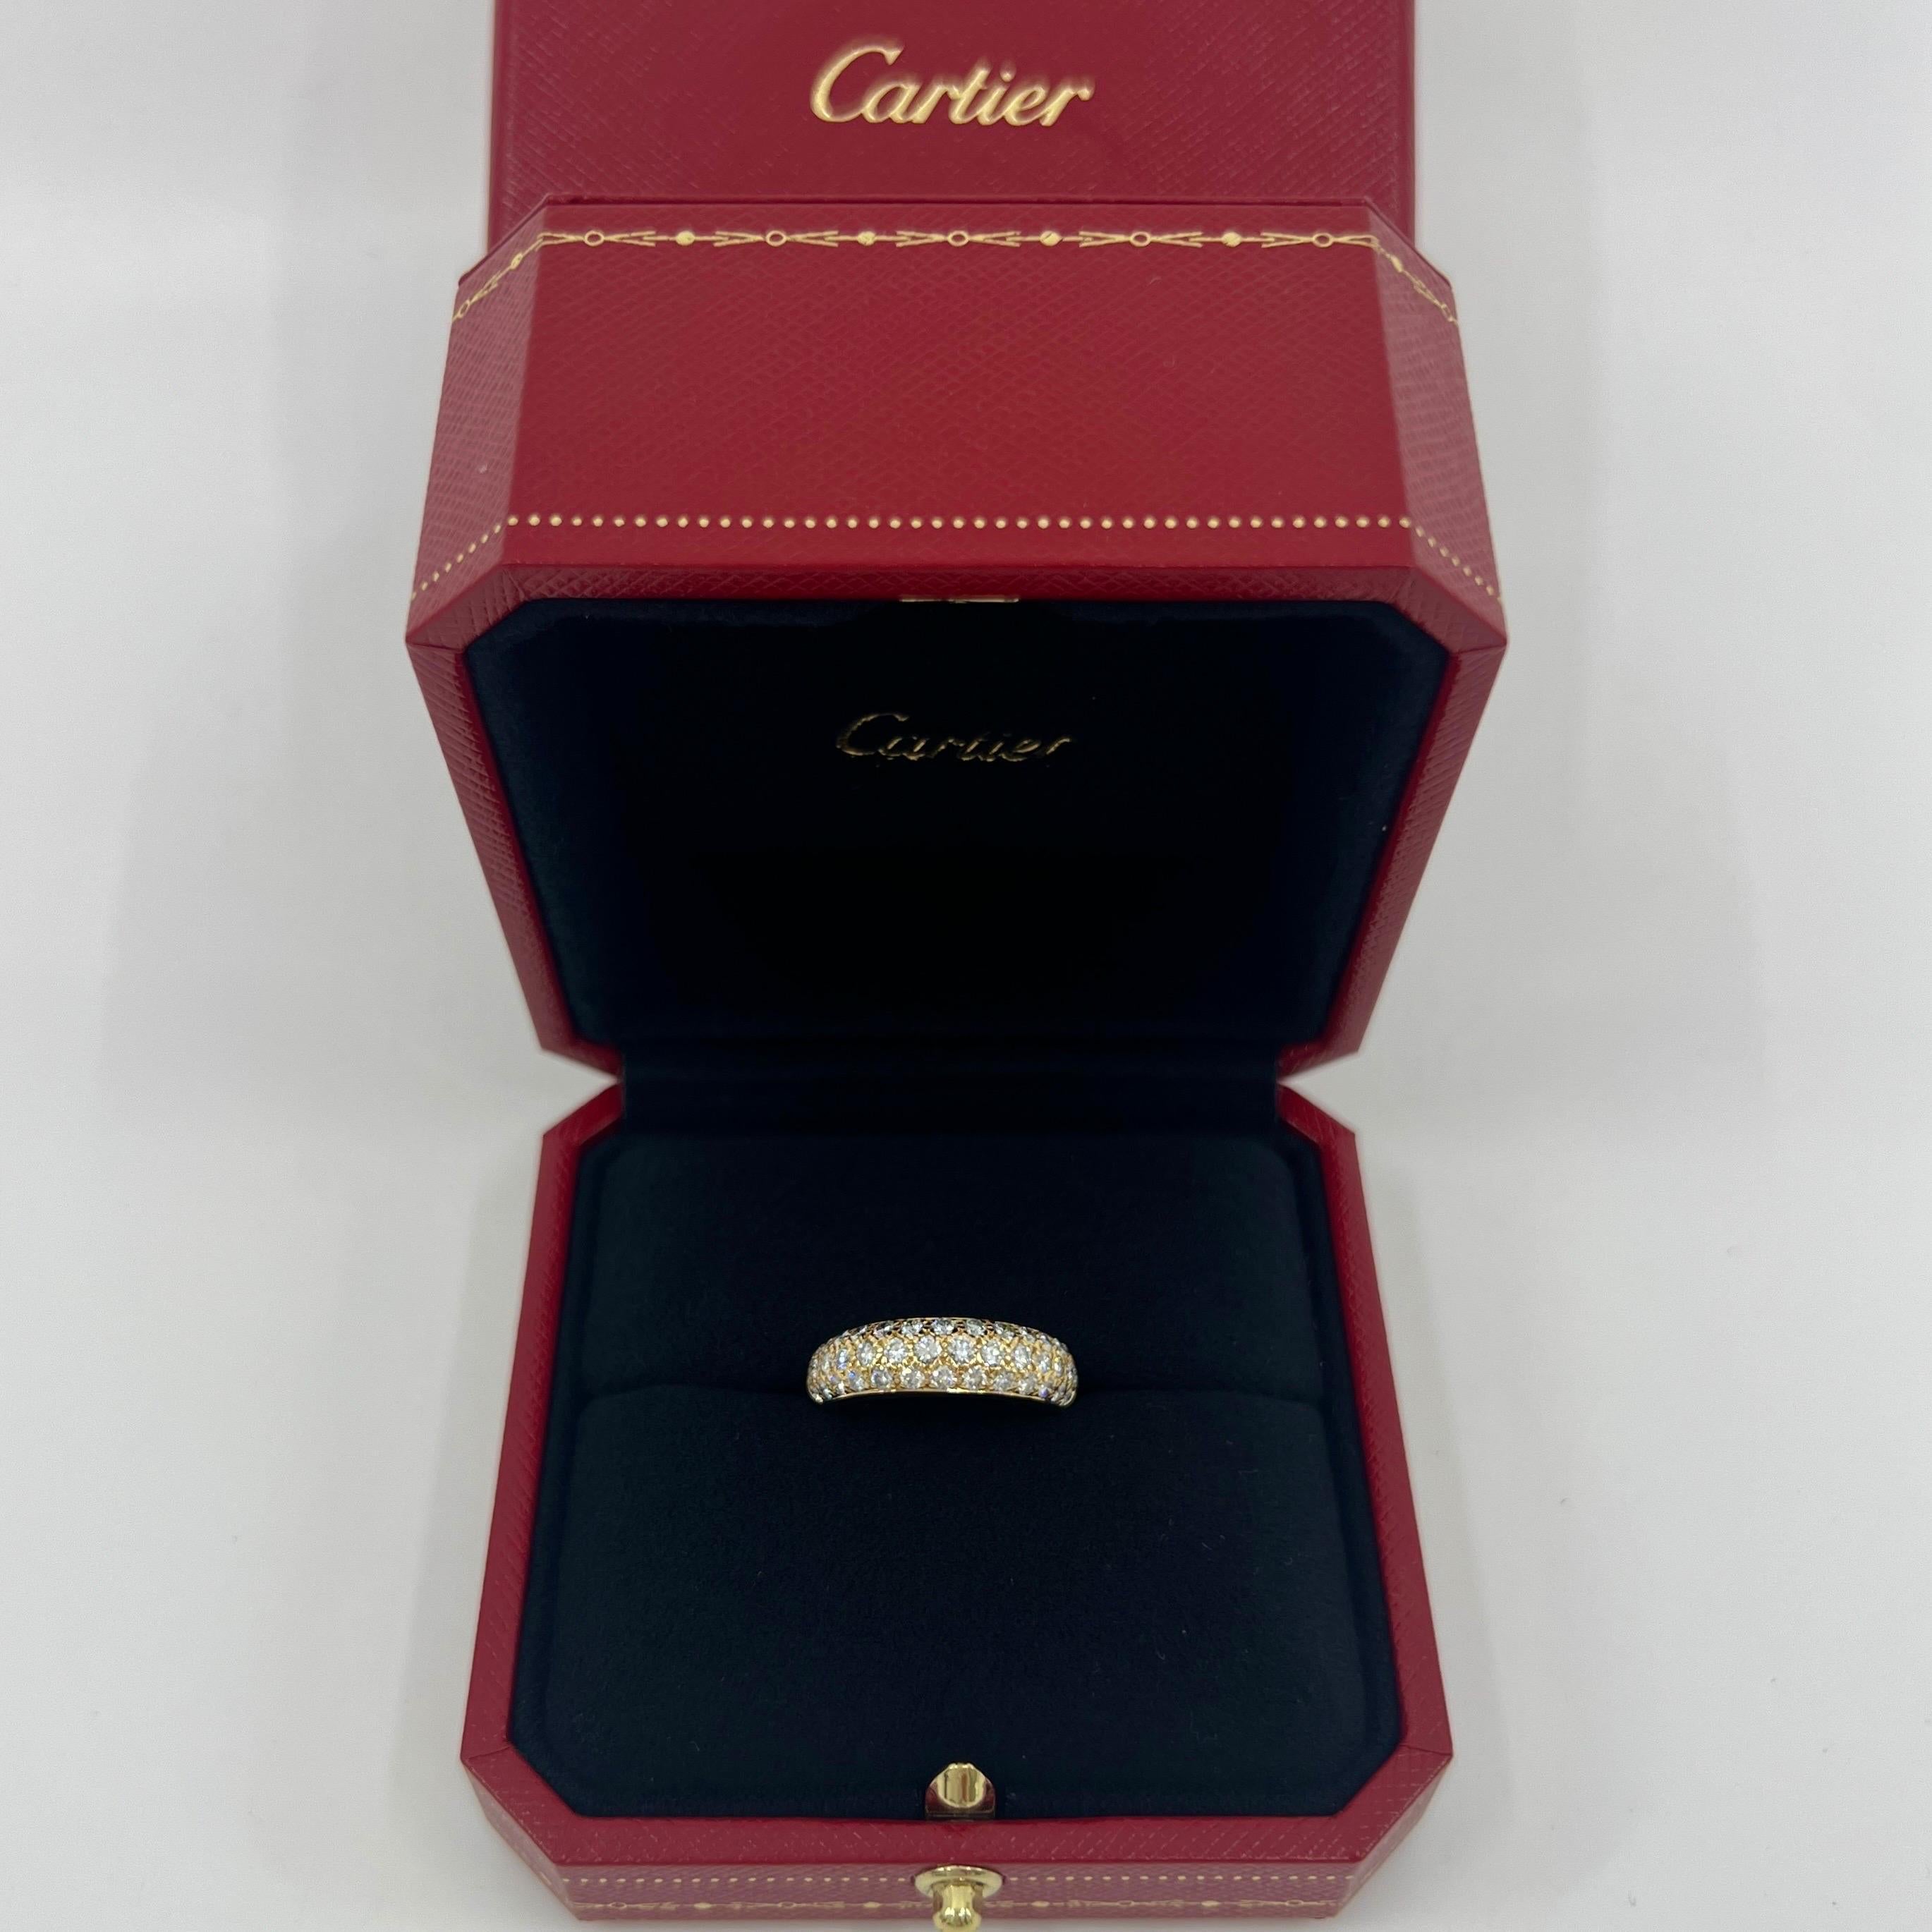 Rare Vintage Cartier Pavé Diamond 18k Gelbgold Band Ring.

Dieser wunderschöne Ring von Cartier zeichnet sich durch ein geschwungenes Kuppeldesign mit drei Reihen wunderschön gefasster Pavé-Diamanten aus, die das Band zur Hälfte umschließen.

Die